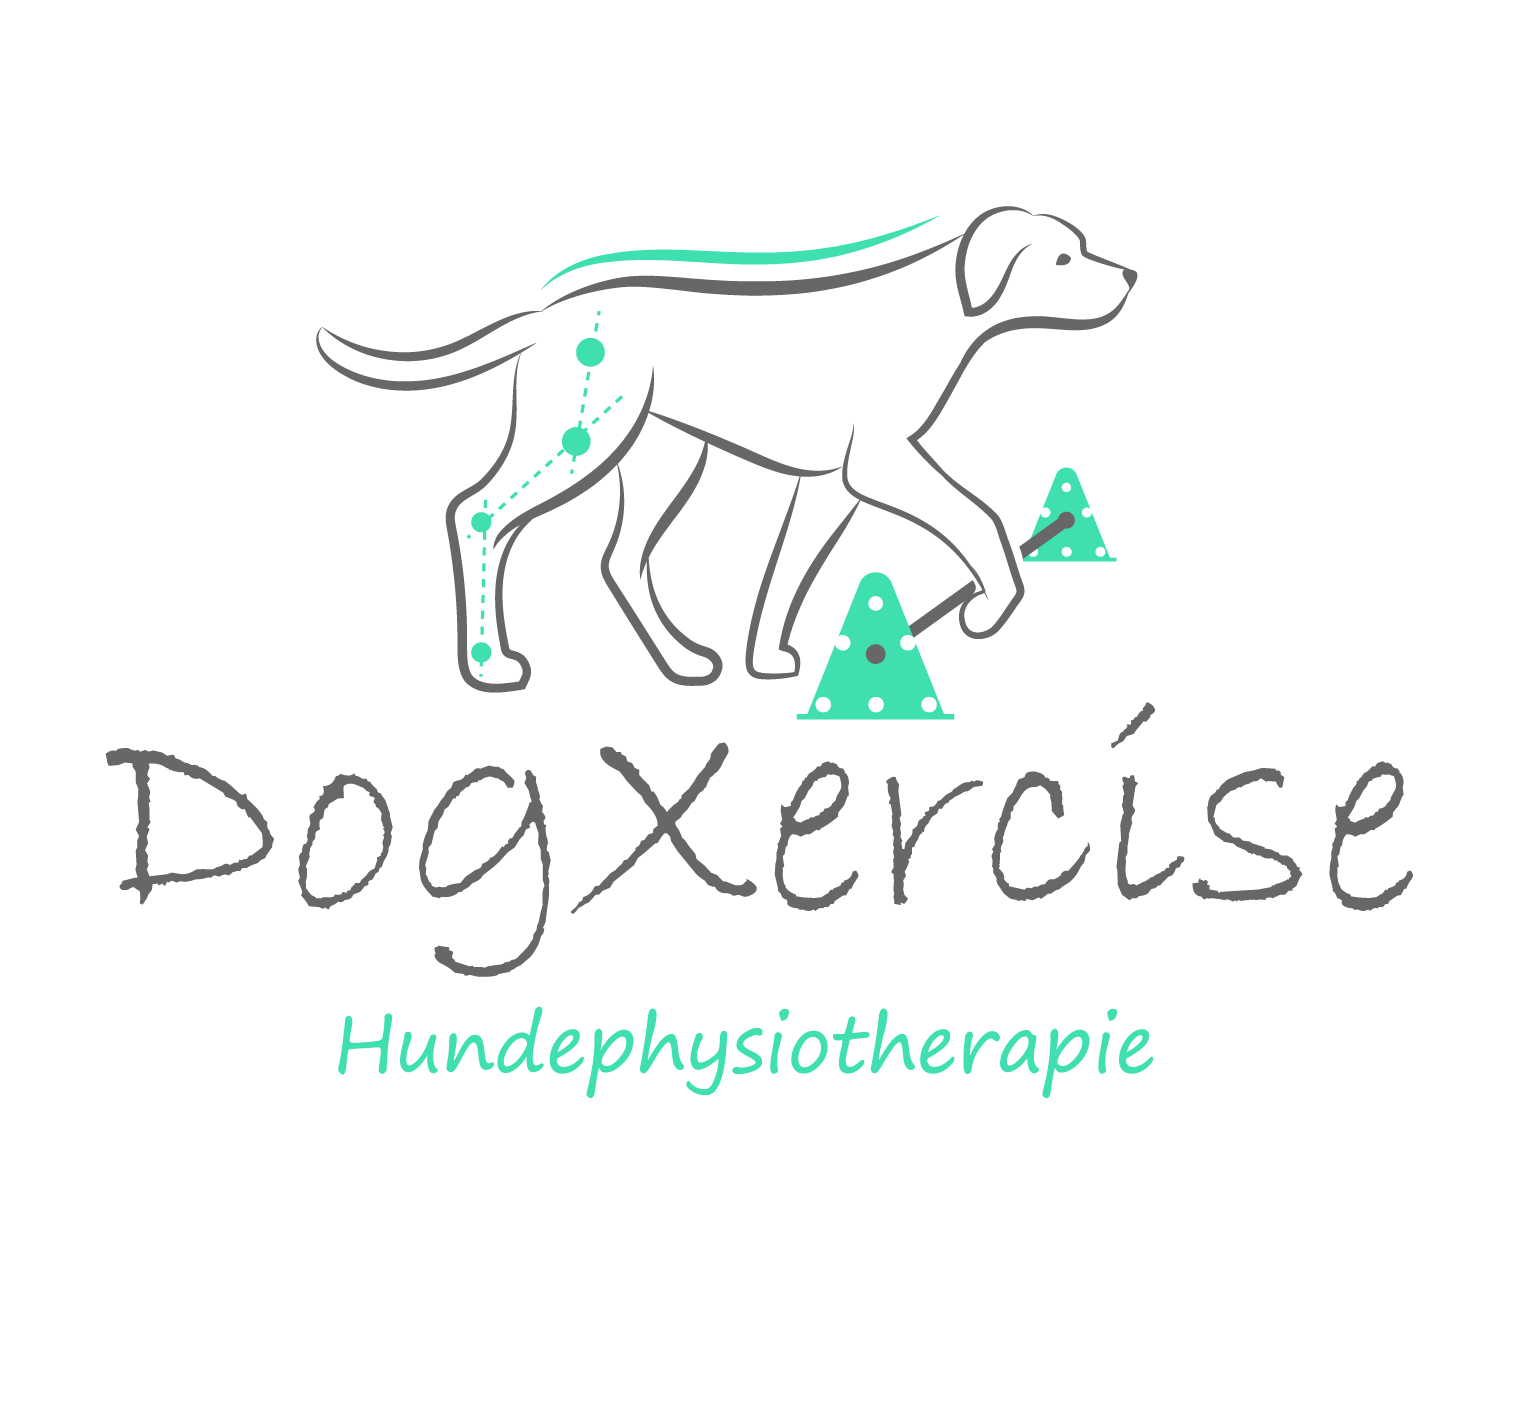 Dogxercise_Logo